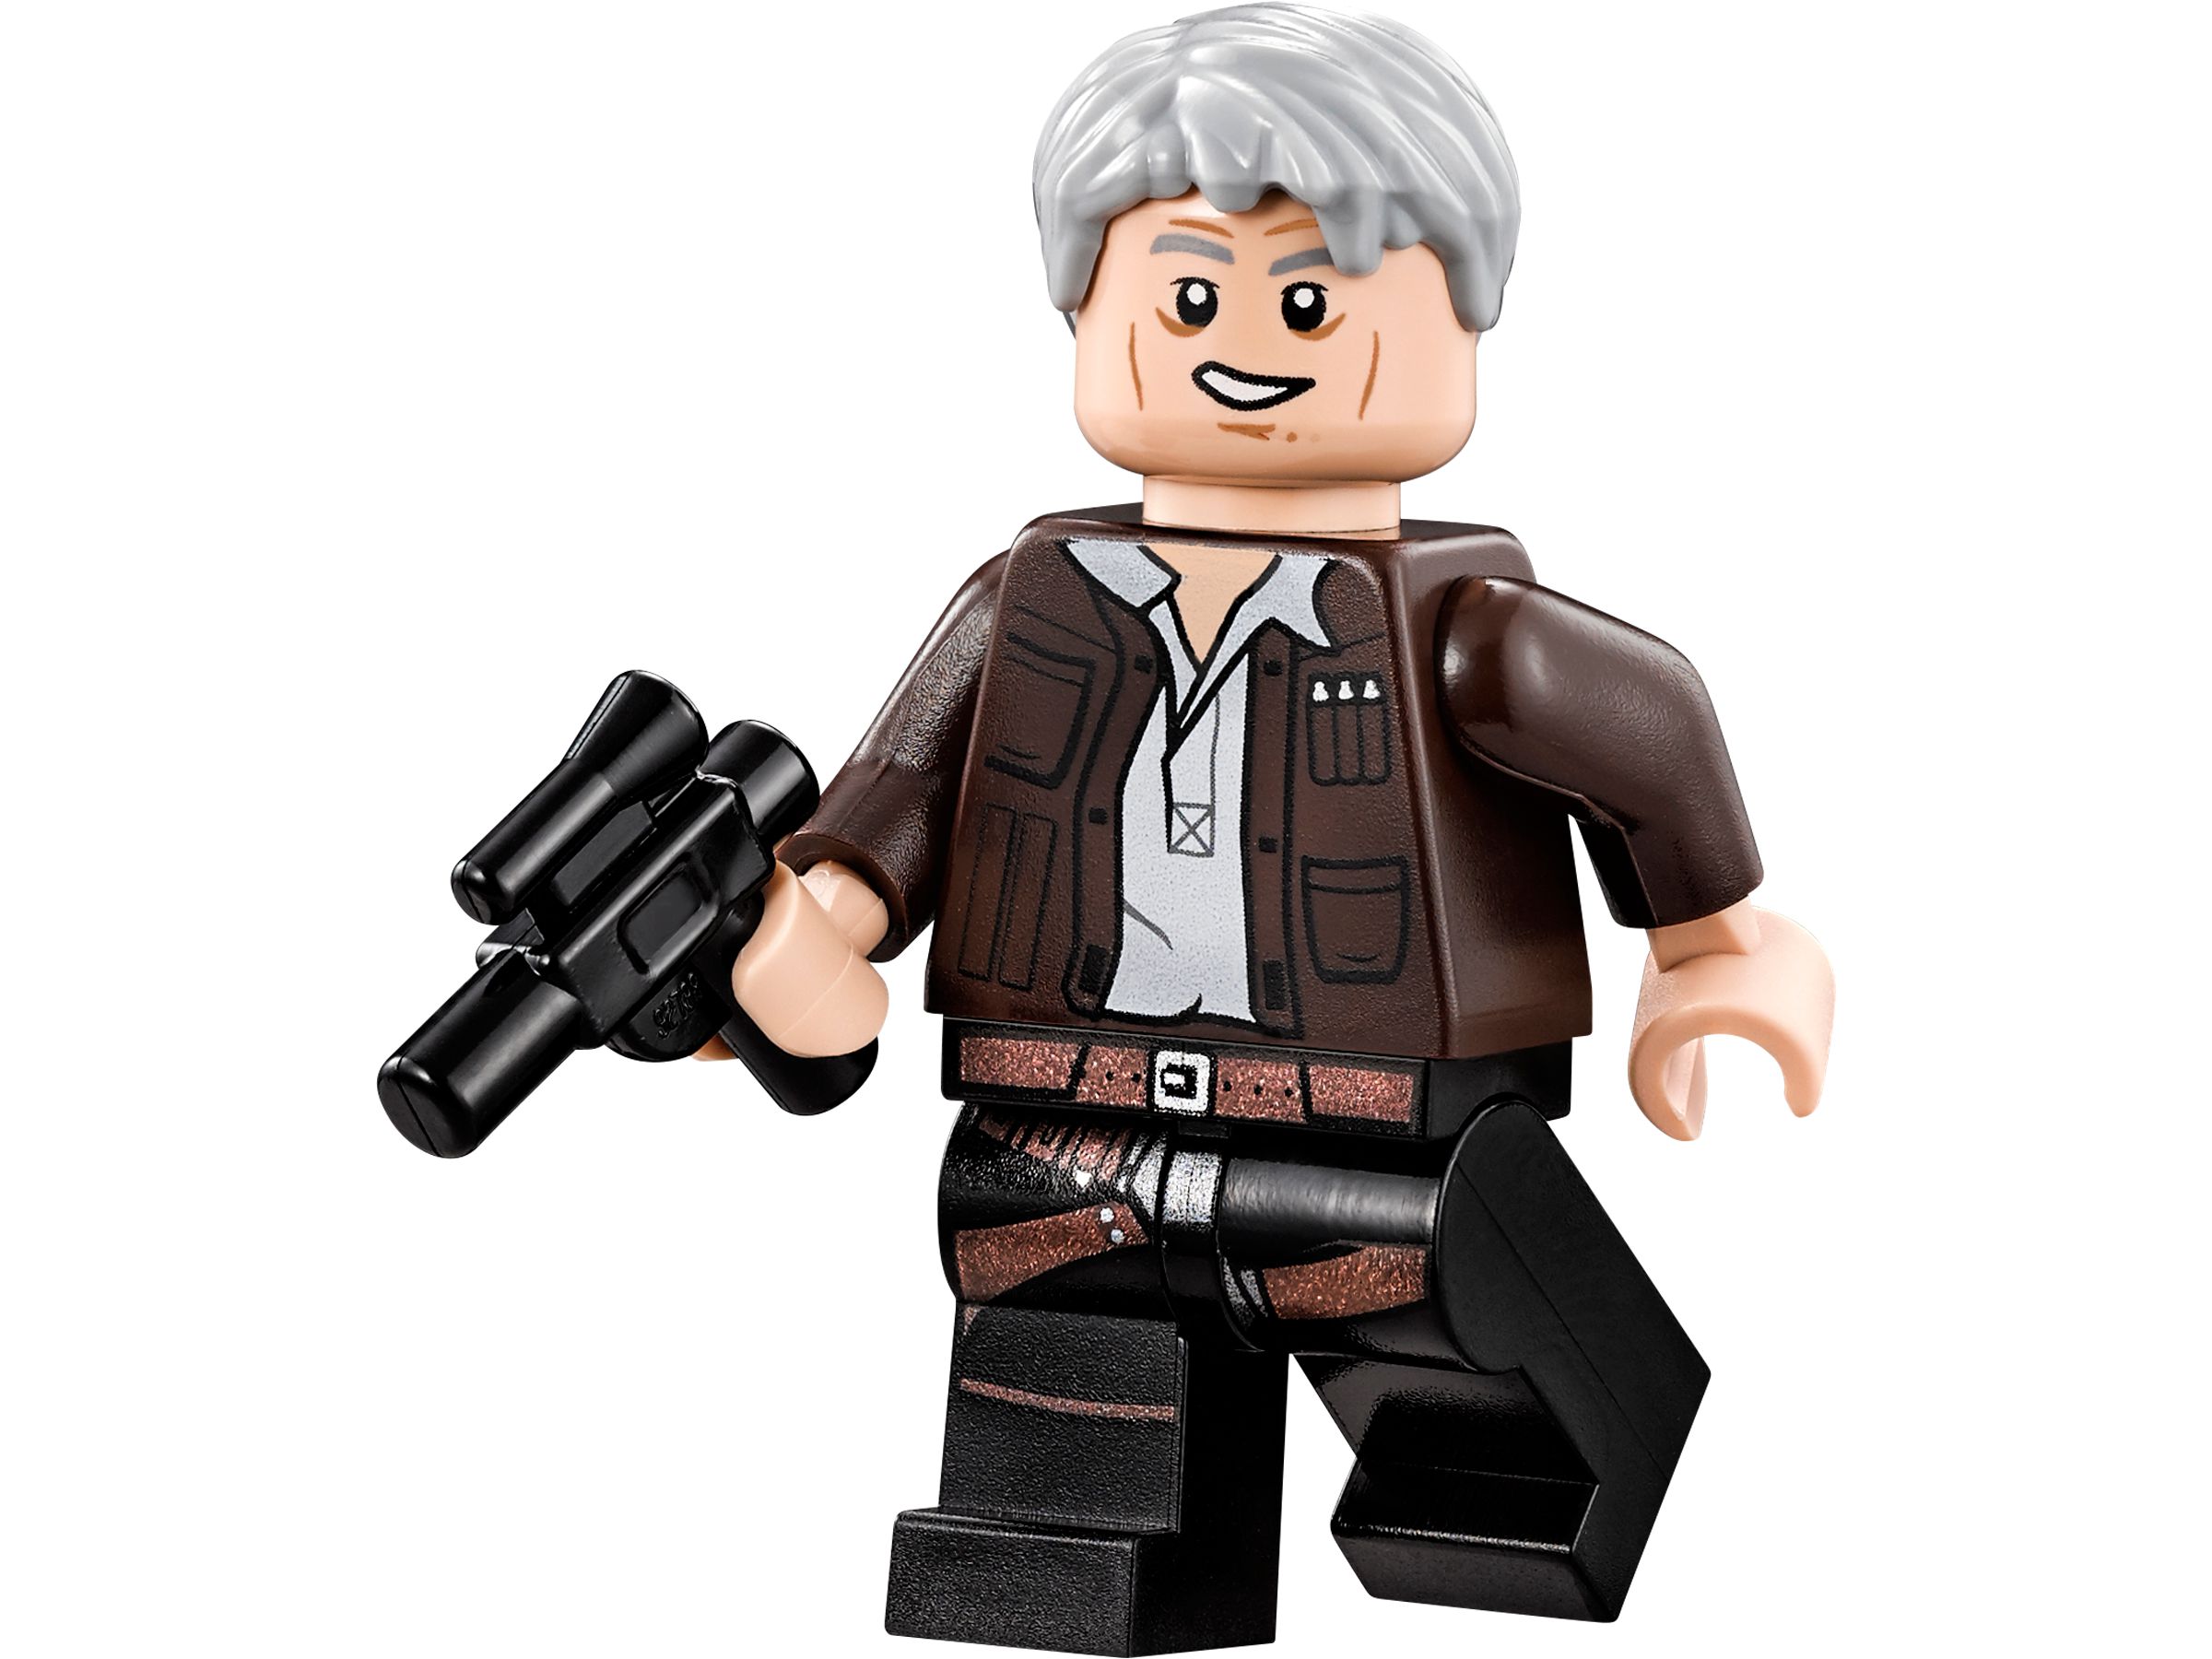 LEGO Star Wars 75105 Millennium Falcon™ LEGO_75105_alt10.jpg